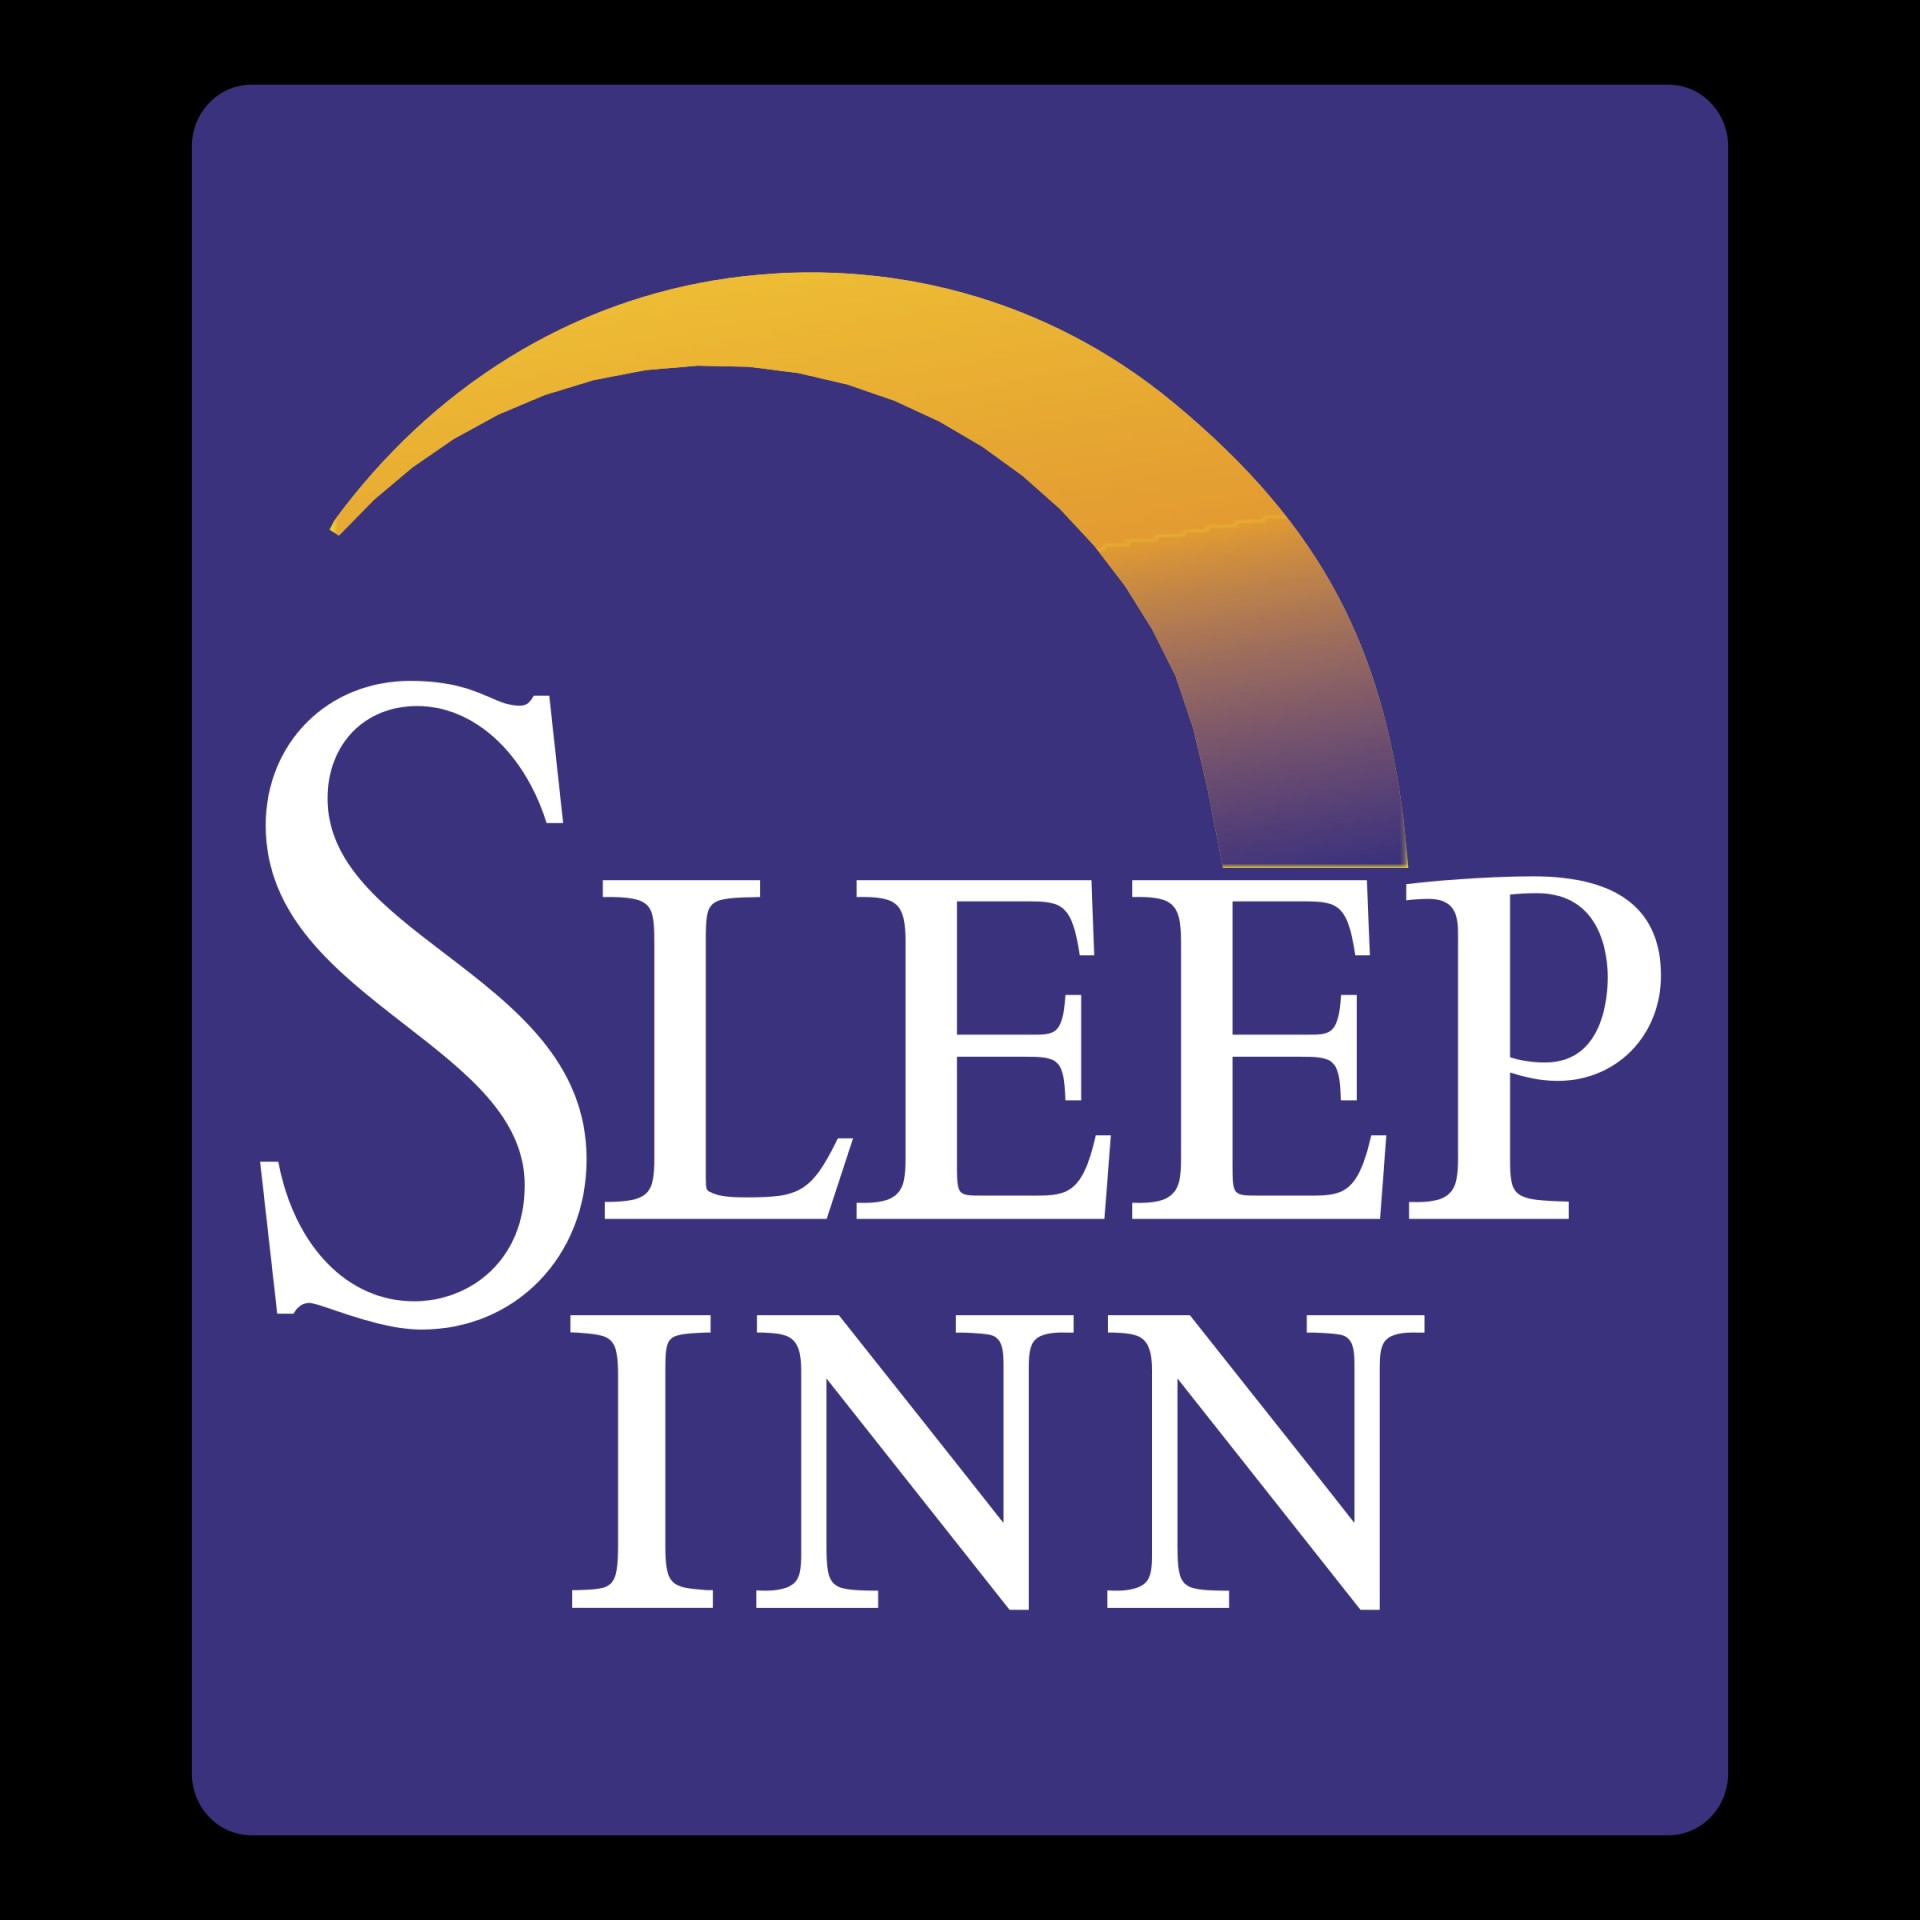 Sleep Inn logo